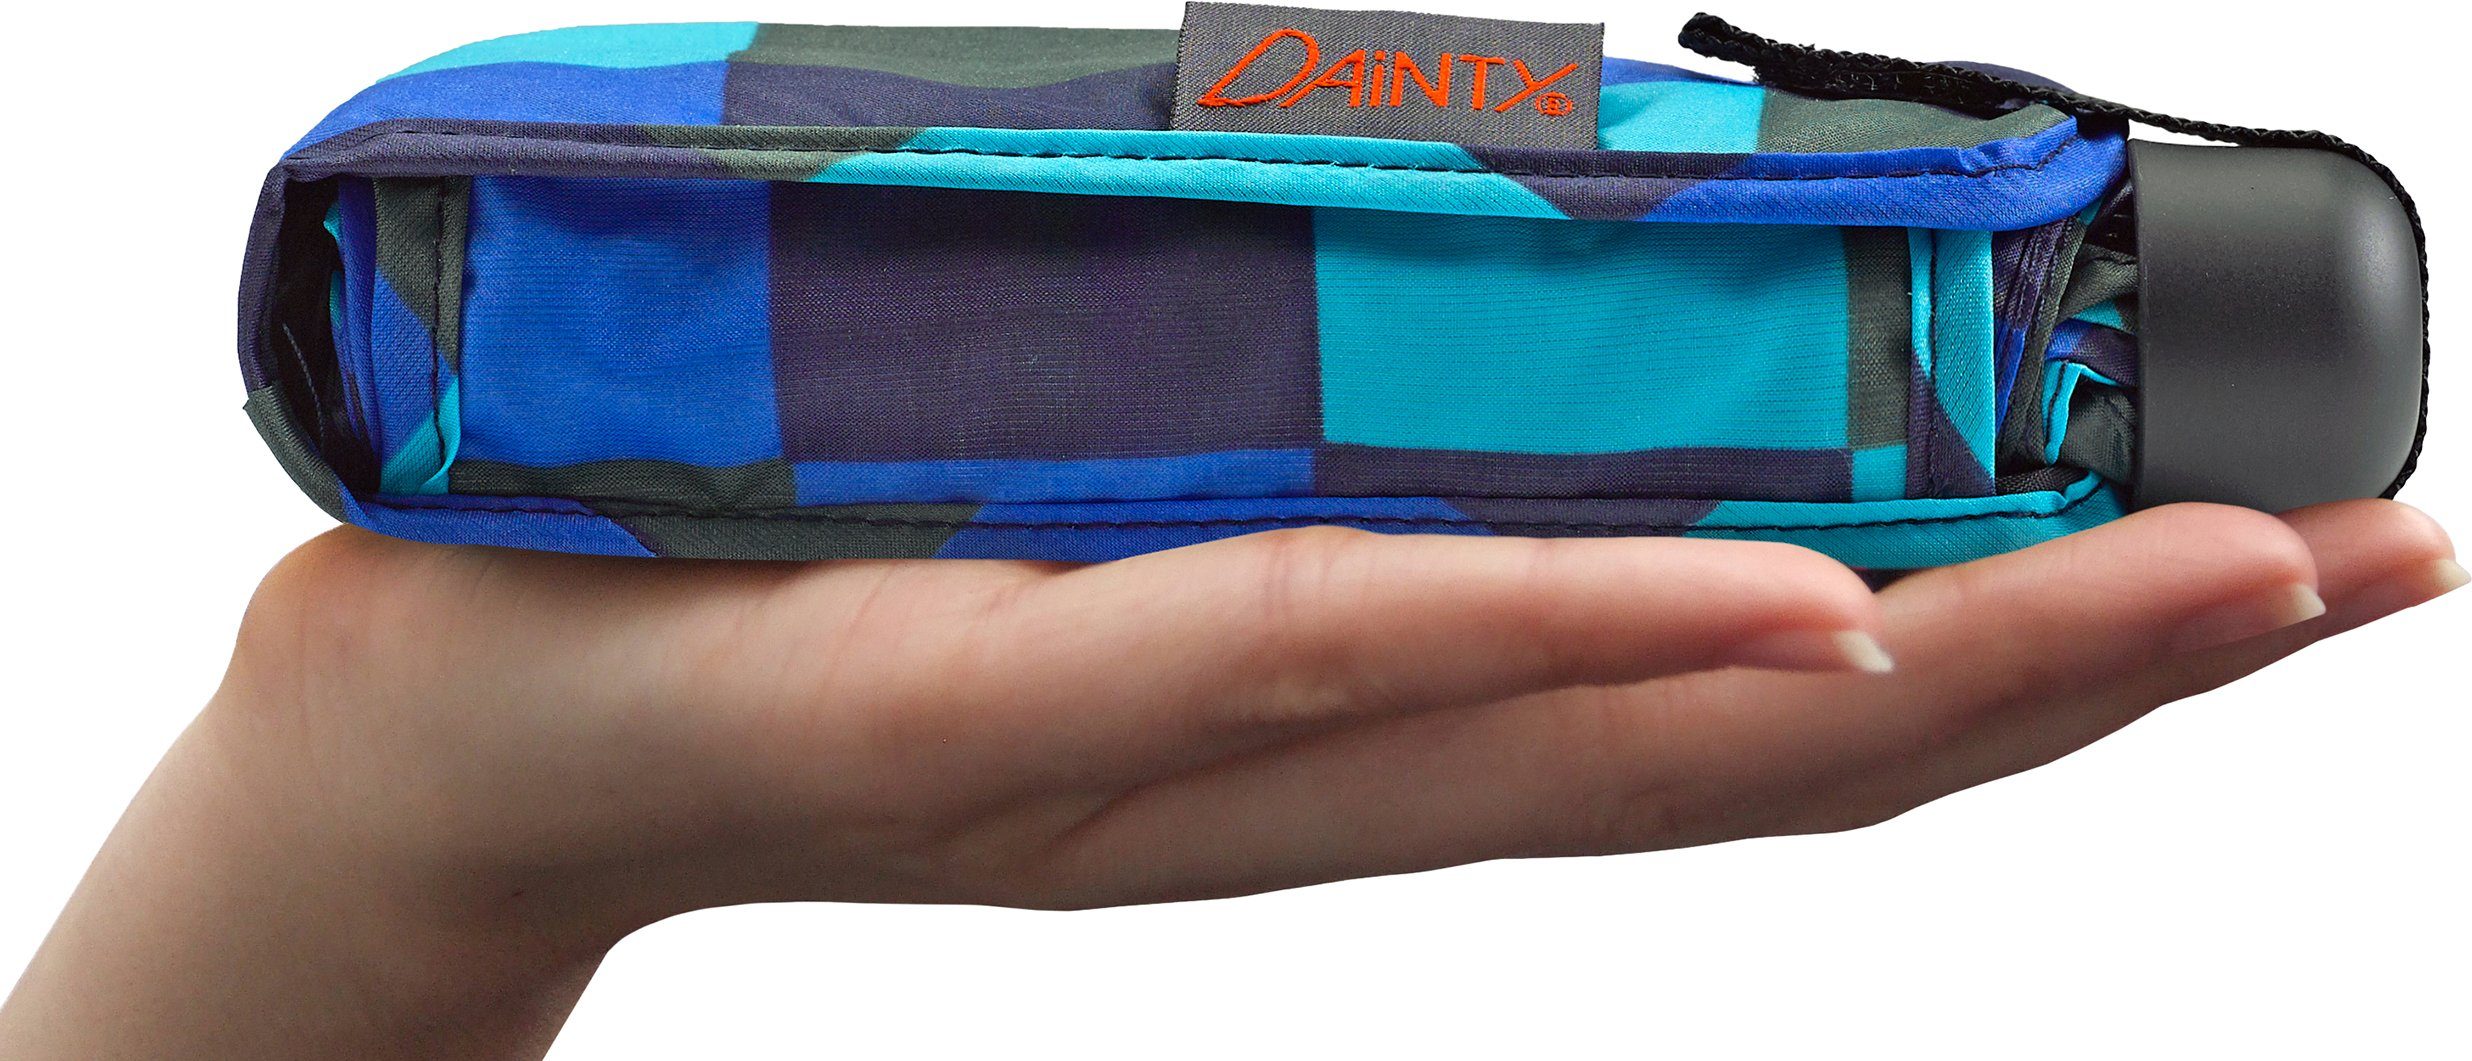 Karo und Taschenregenschirm grün, blau extra kurz EuroSCHIRM® flach Dainty,